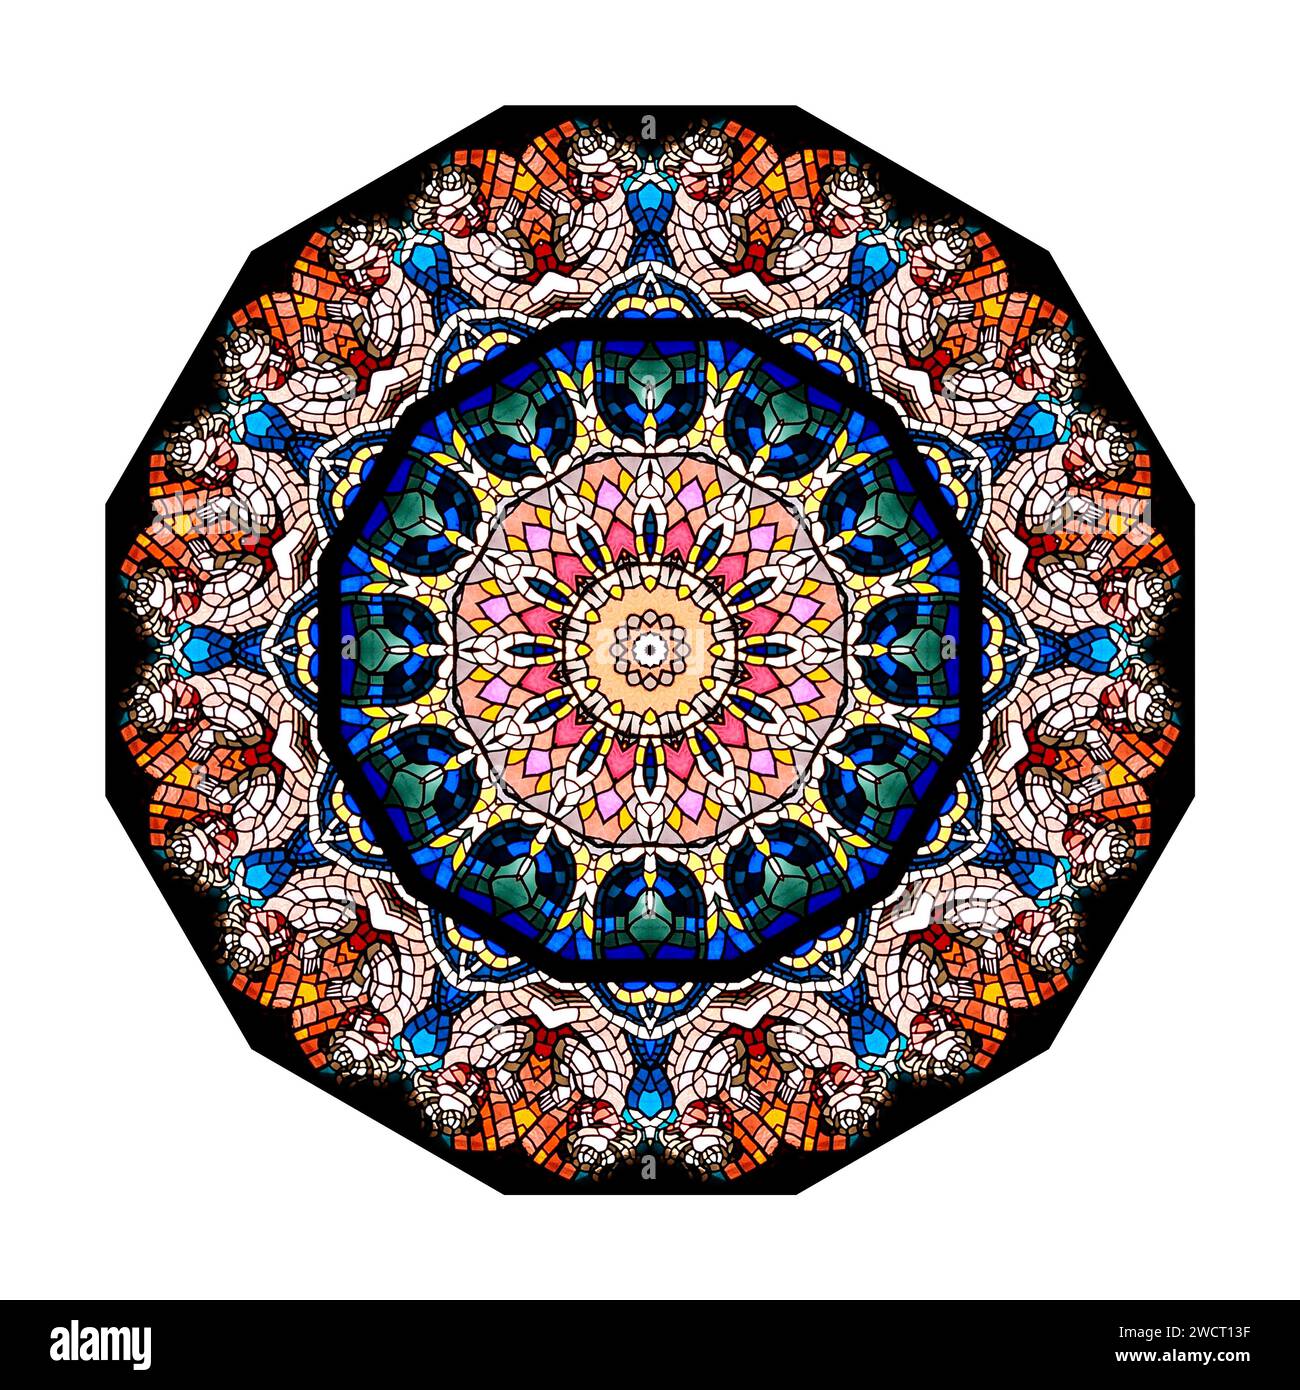 Kaleidoscop - abstraktes Bild durch mehrfache Spiegelung des Buntglasfensters Stockfoto